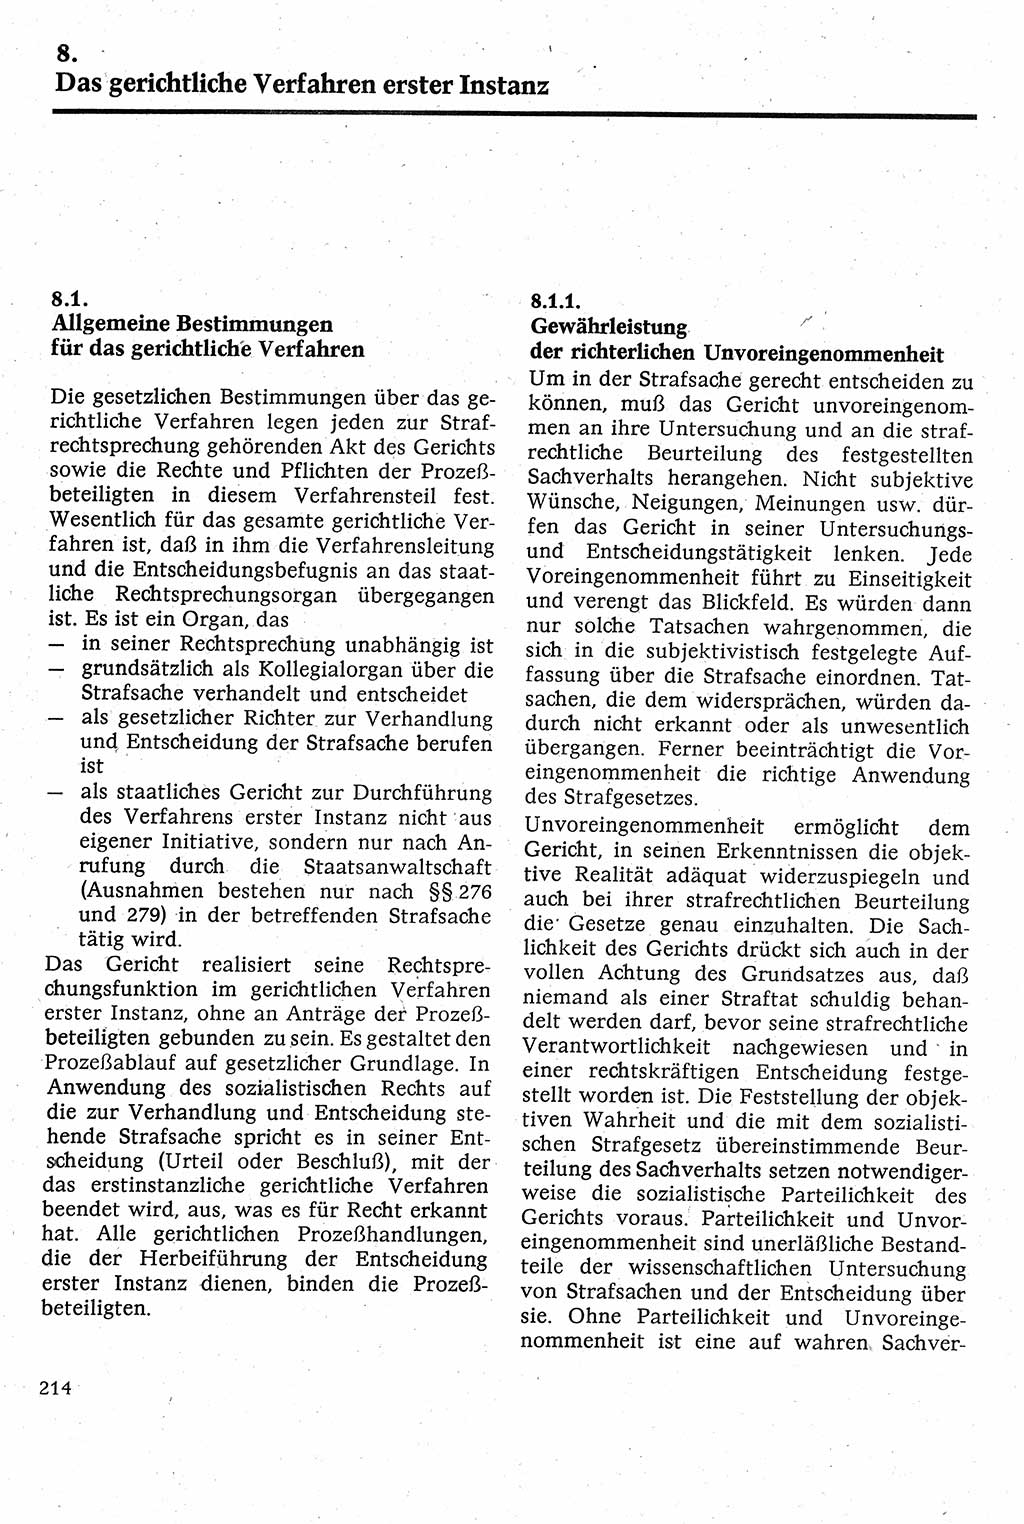 Strafverfahrensrecht [Deutsche Demokratische Republik (DDR)], Lehrbuch 1982, Seite 214 (Strafverf.-R. DDR Lb. 1982, S. 214)